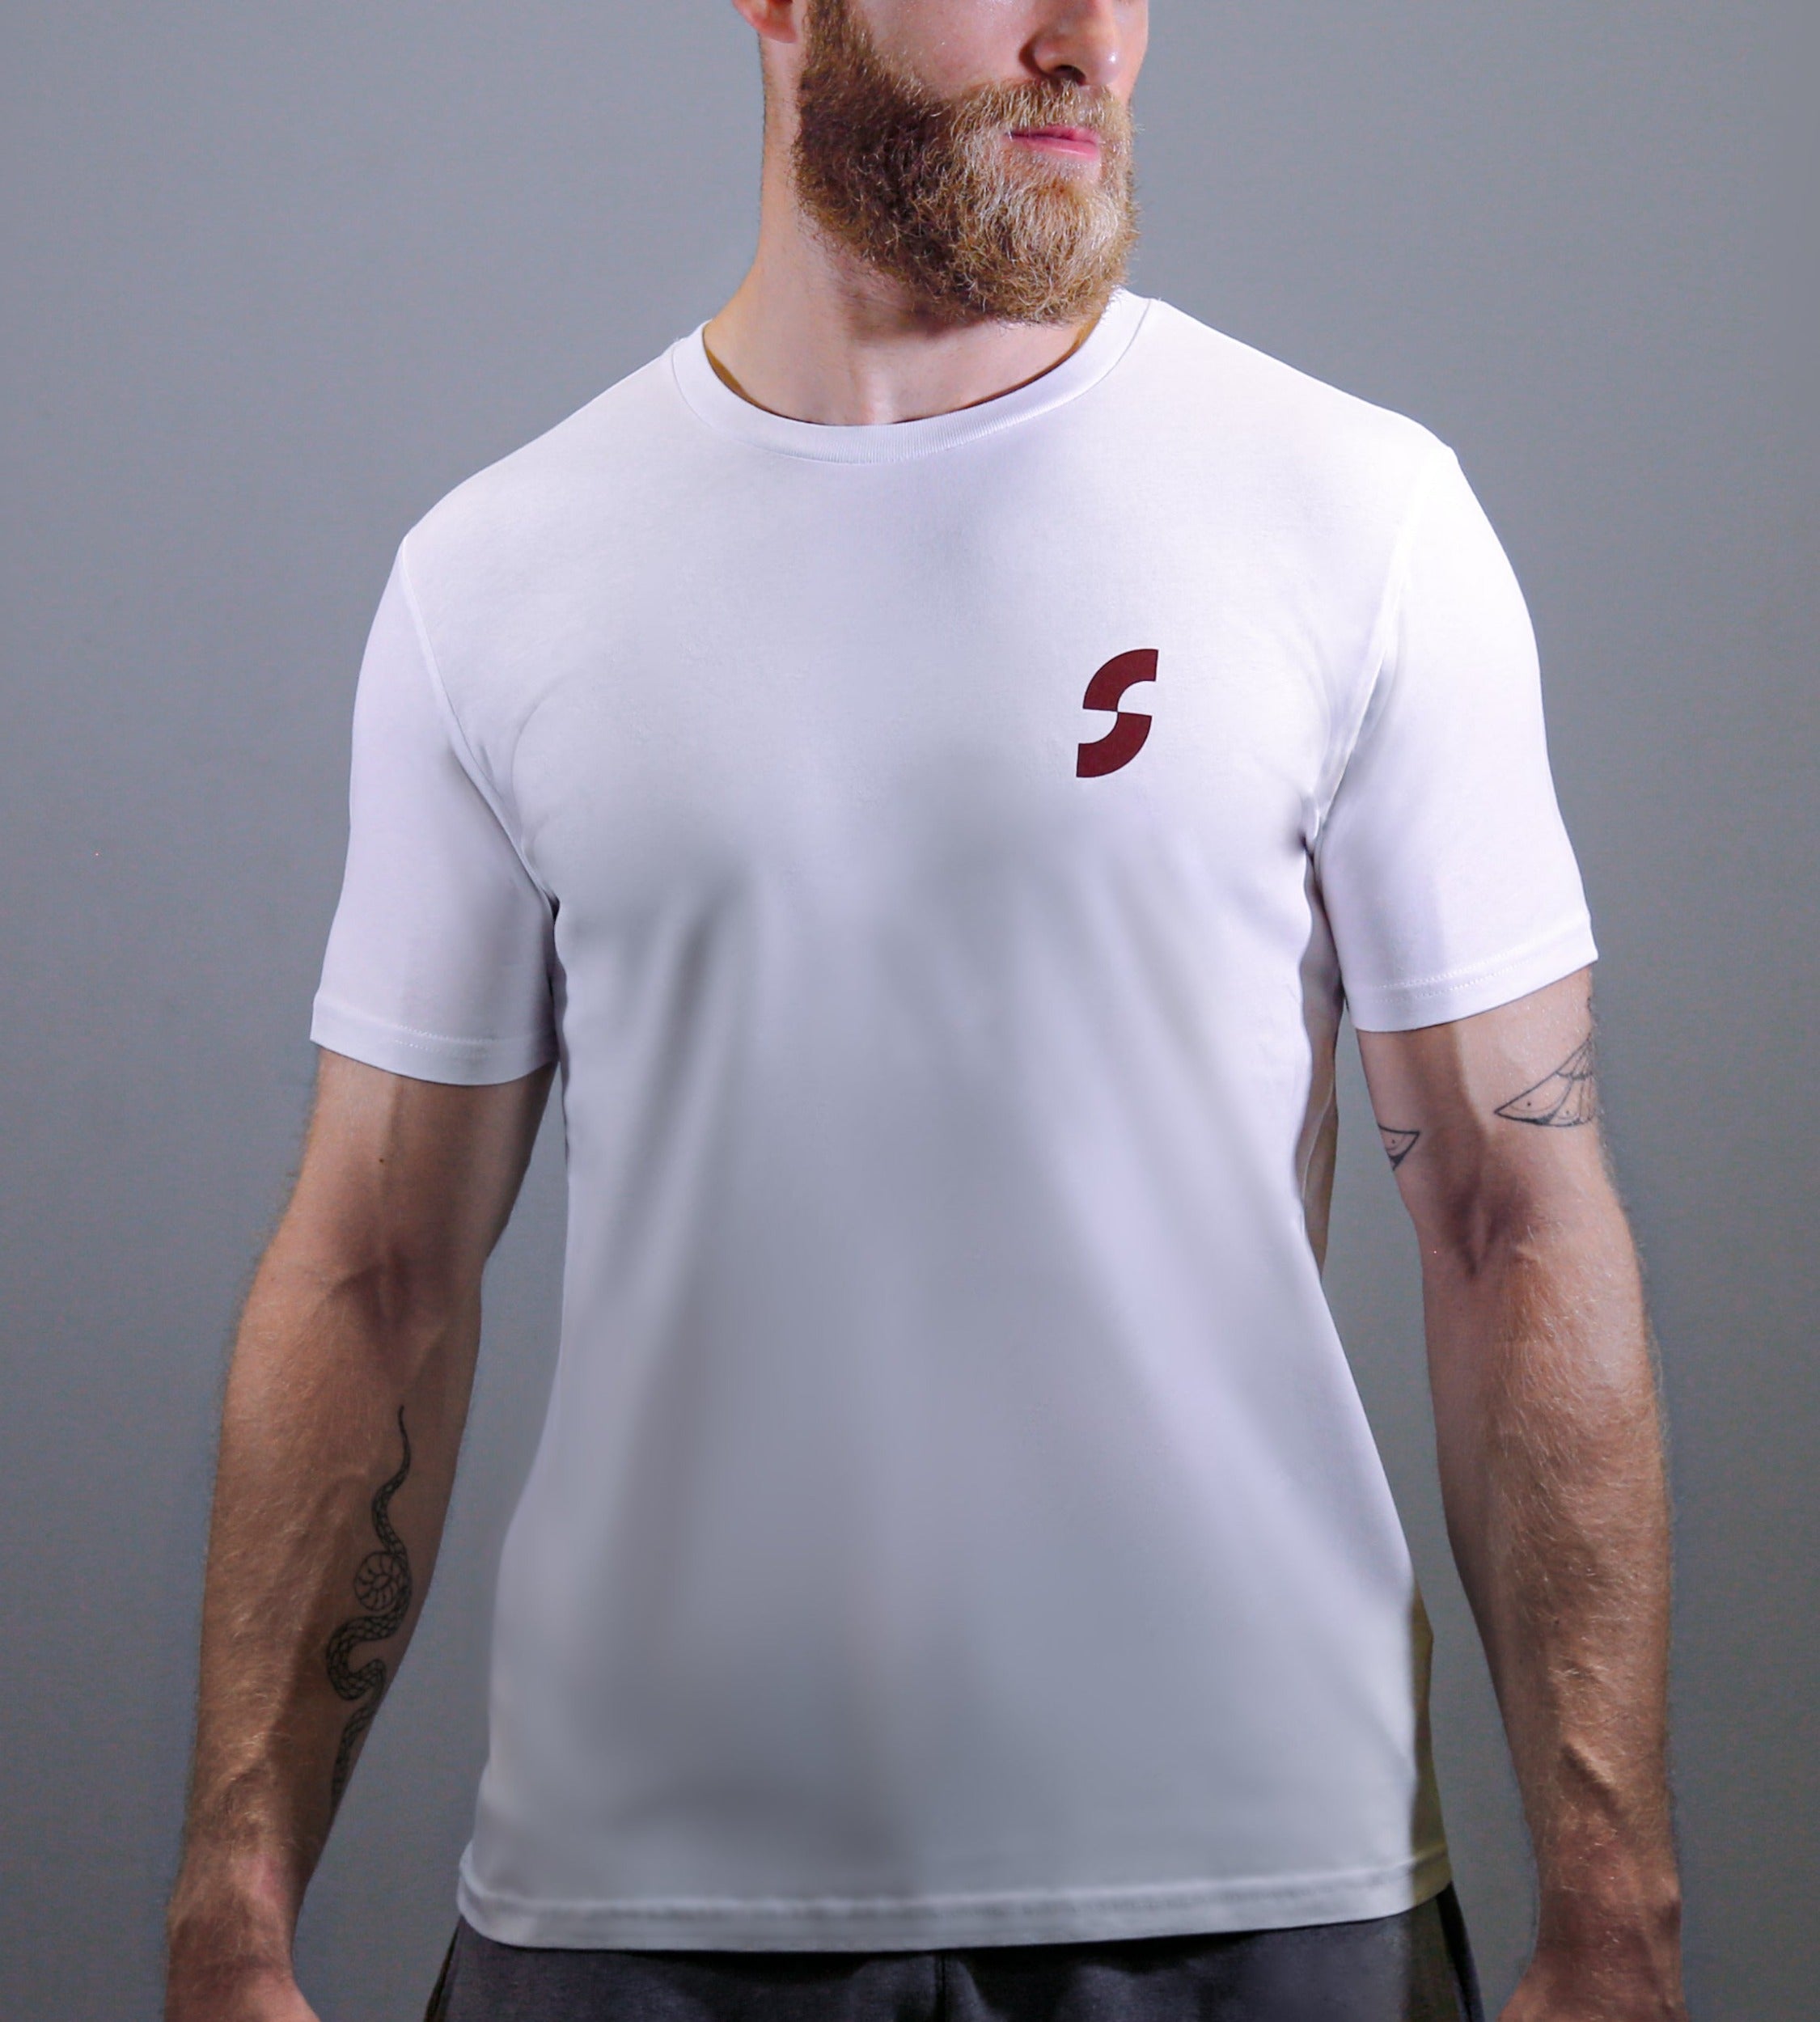 Retro White T-shirt.T3